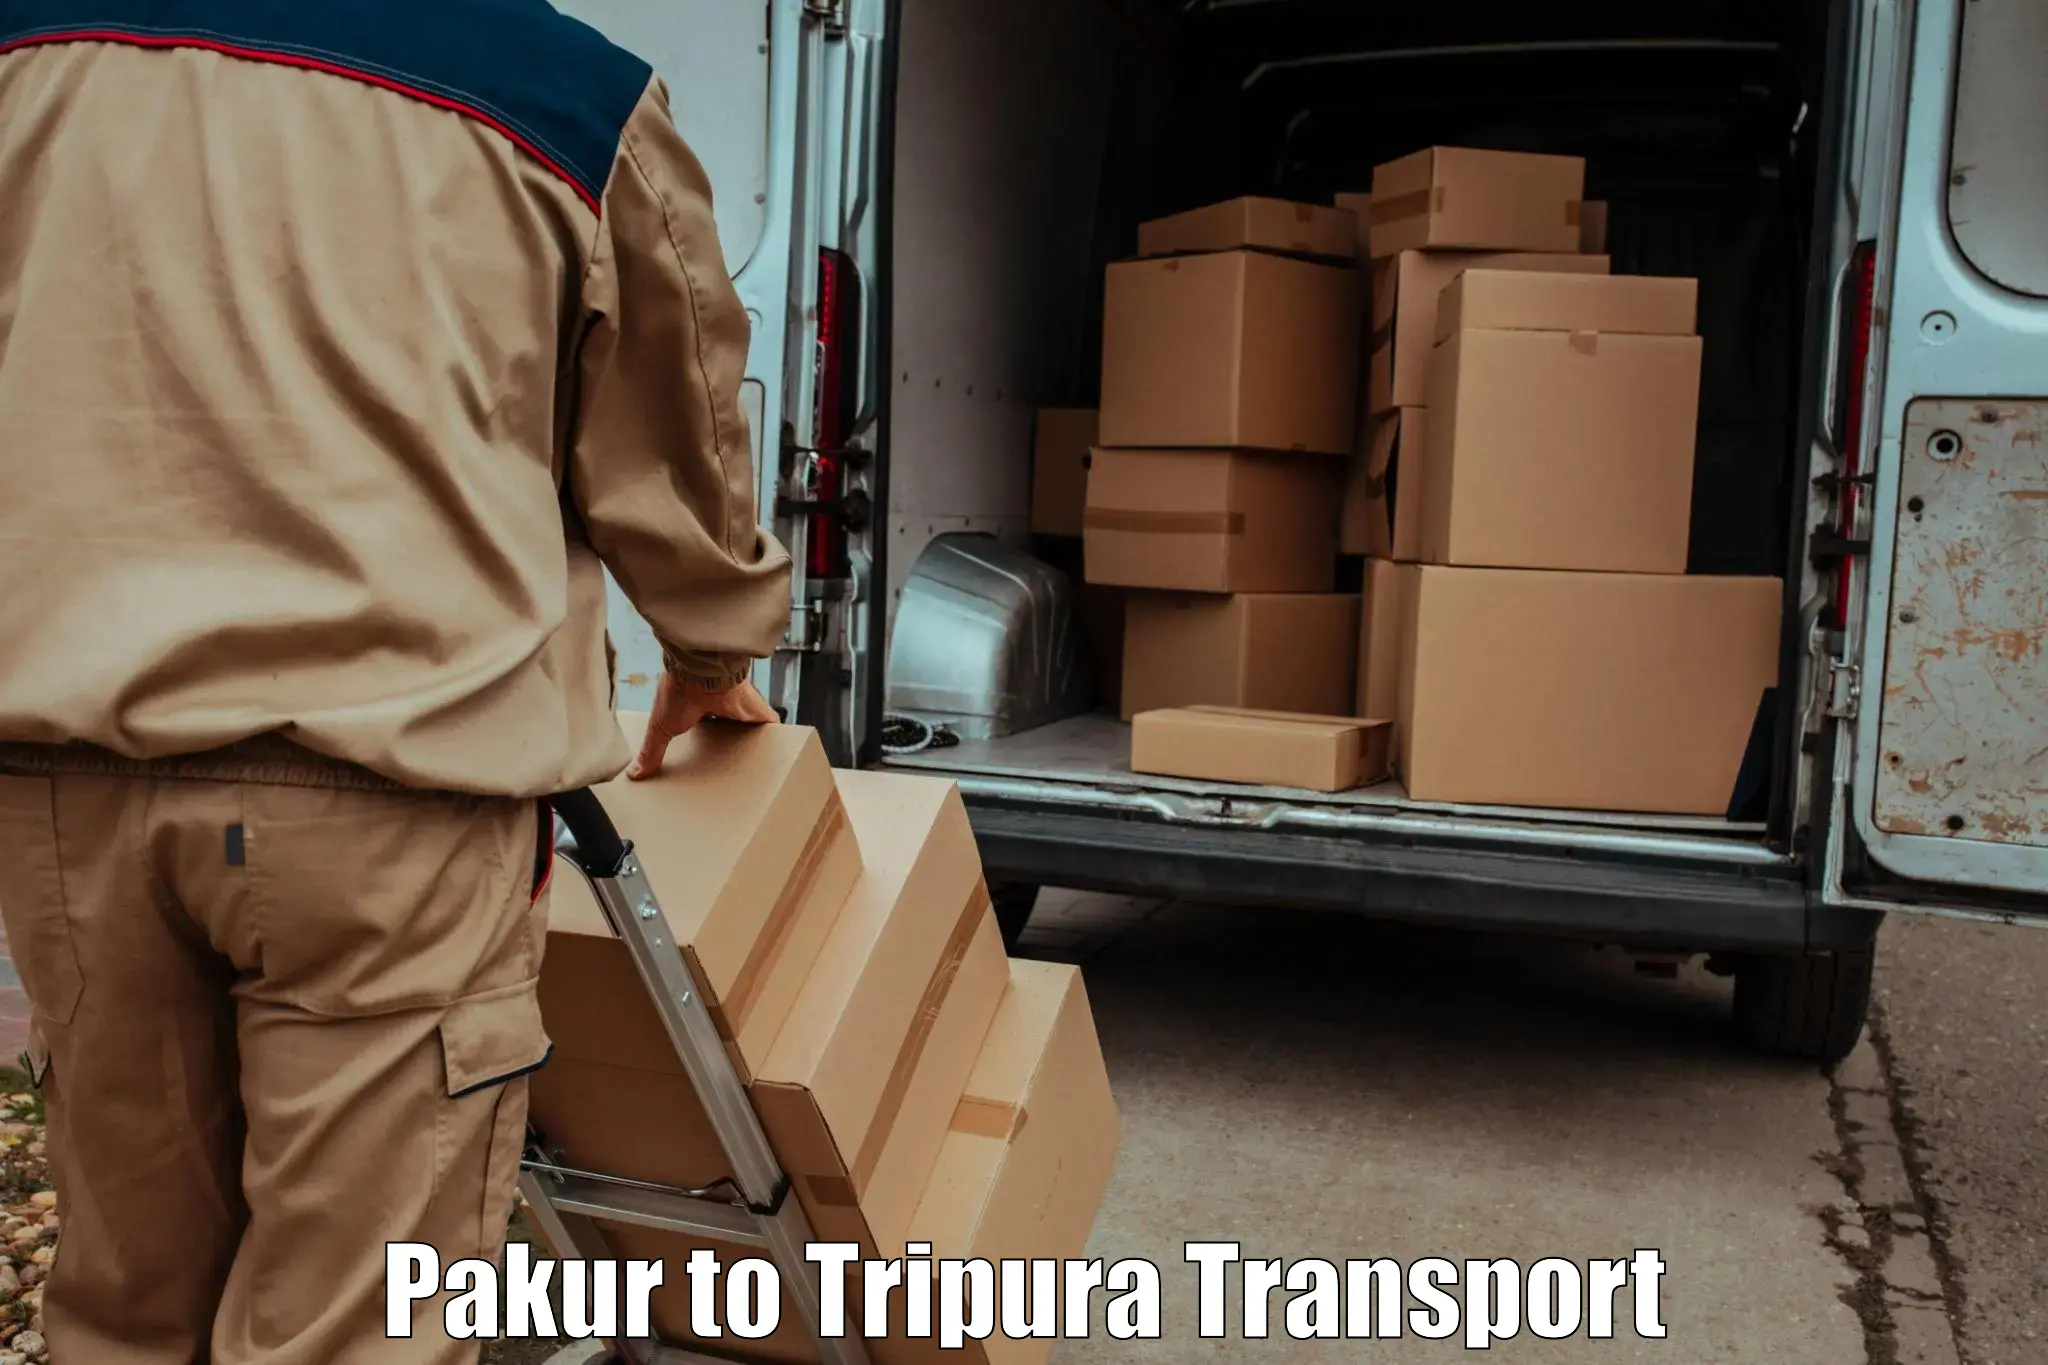 Luggage transport services Pakur to Santirbazar